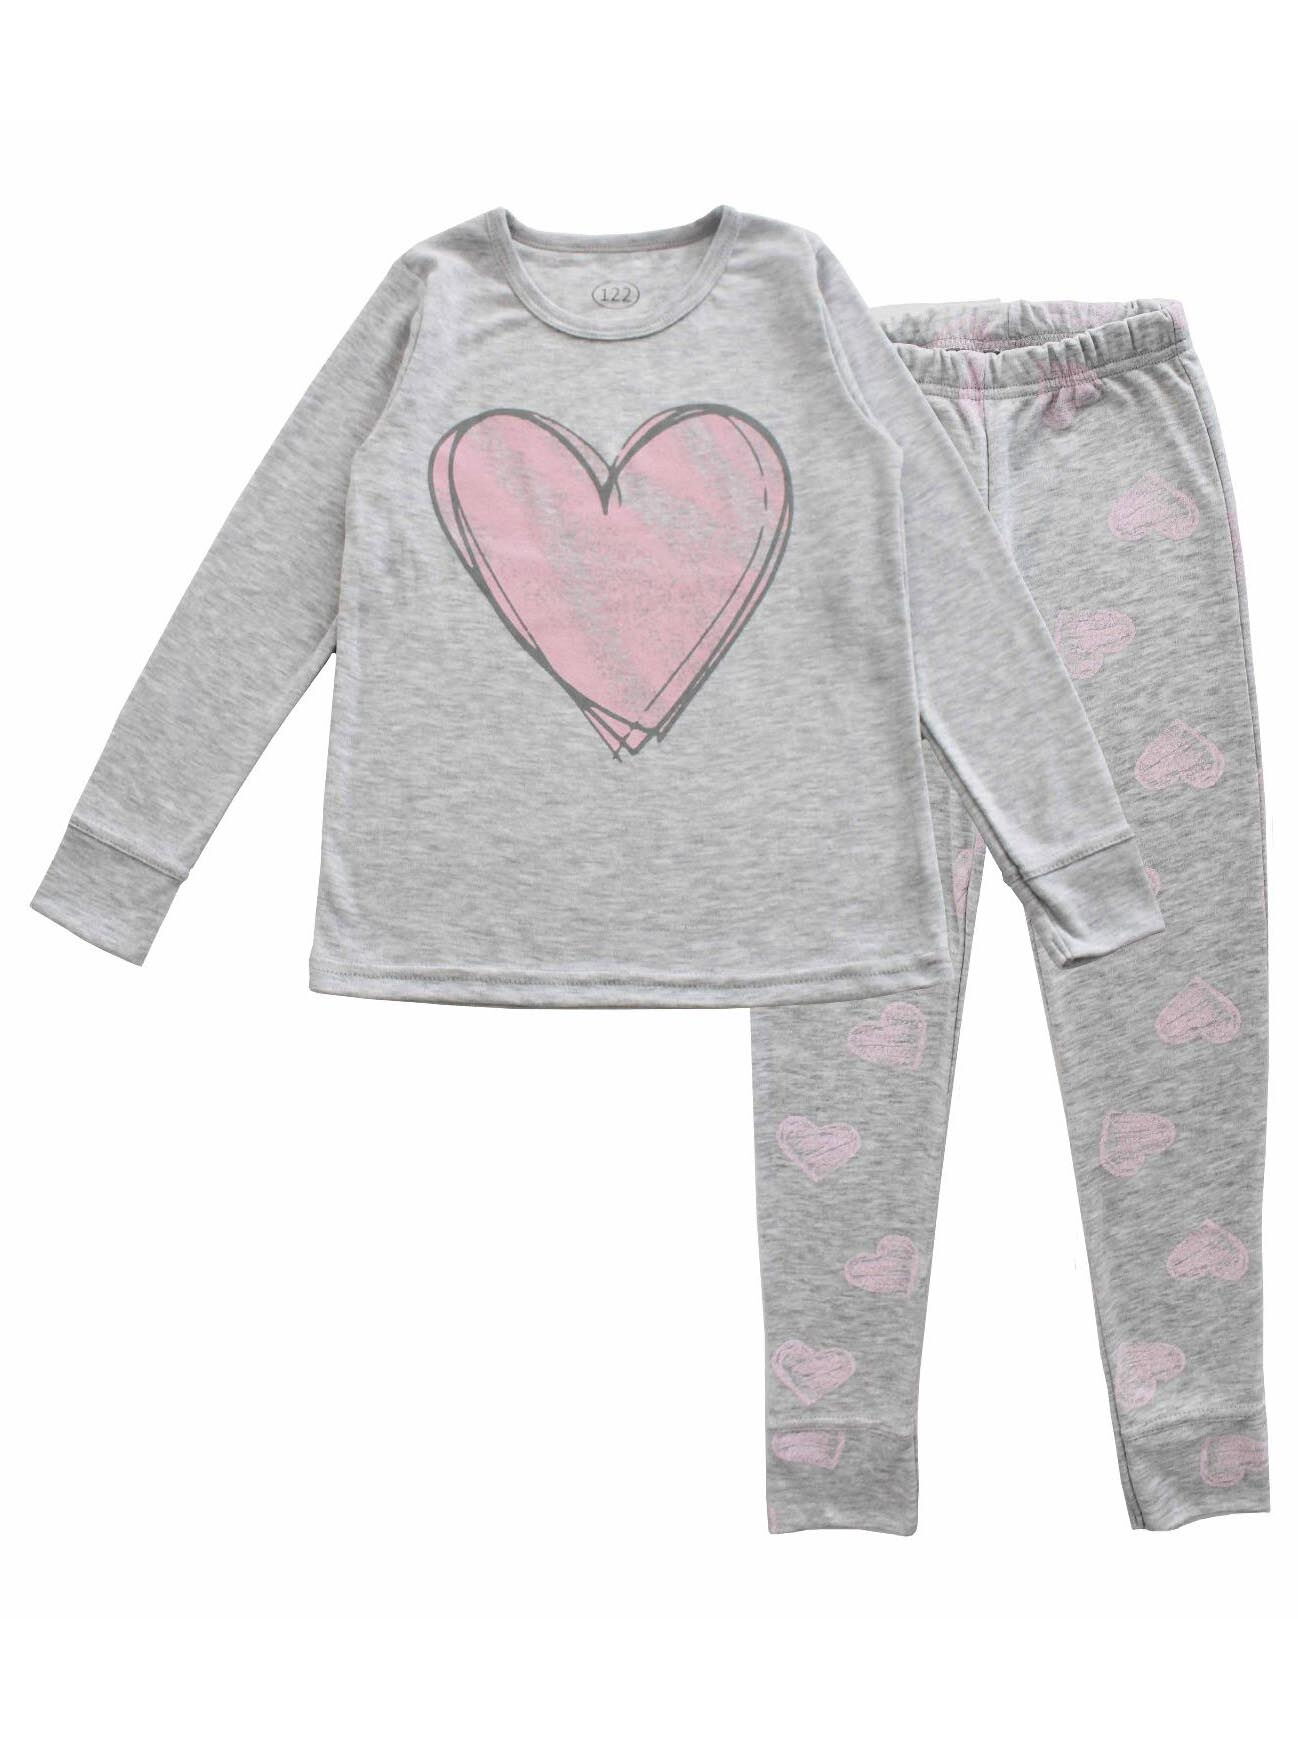 Пижама для девочки Фламинго Сердечко серая 247-232 - цена